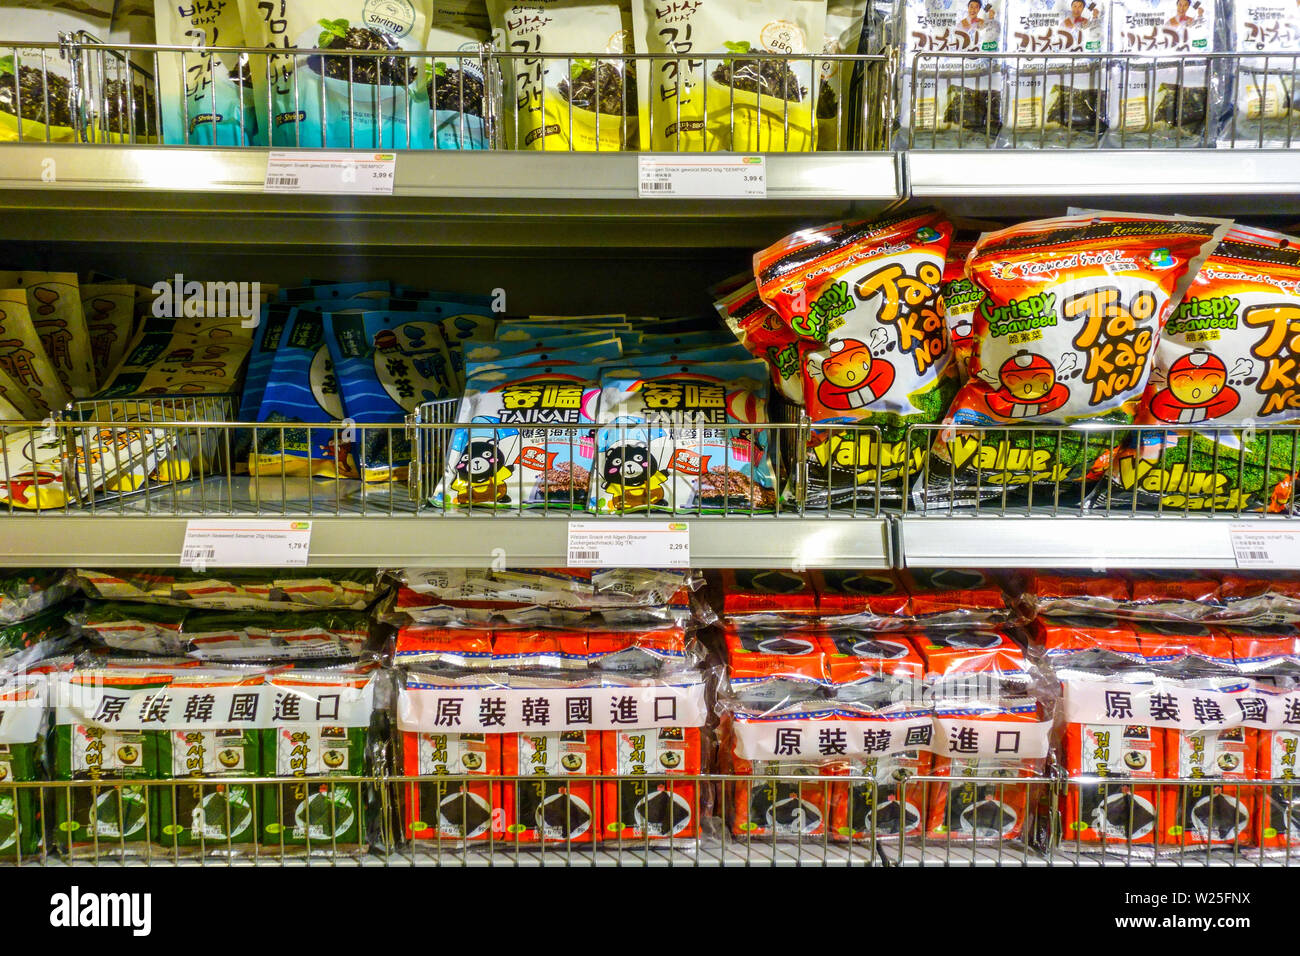 Supermercado asiático 'Go Asia' estantes de supermercados, Seagrass Dresden, Alemania estante de supermercados Foto de stock